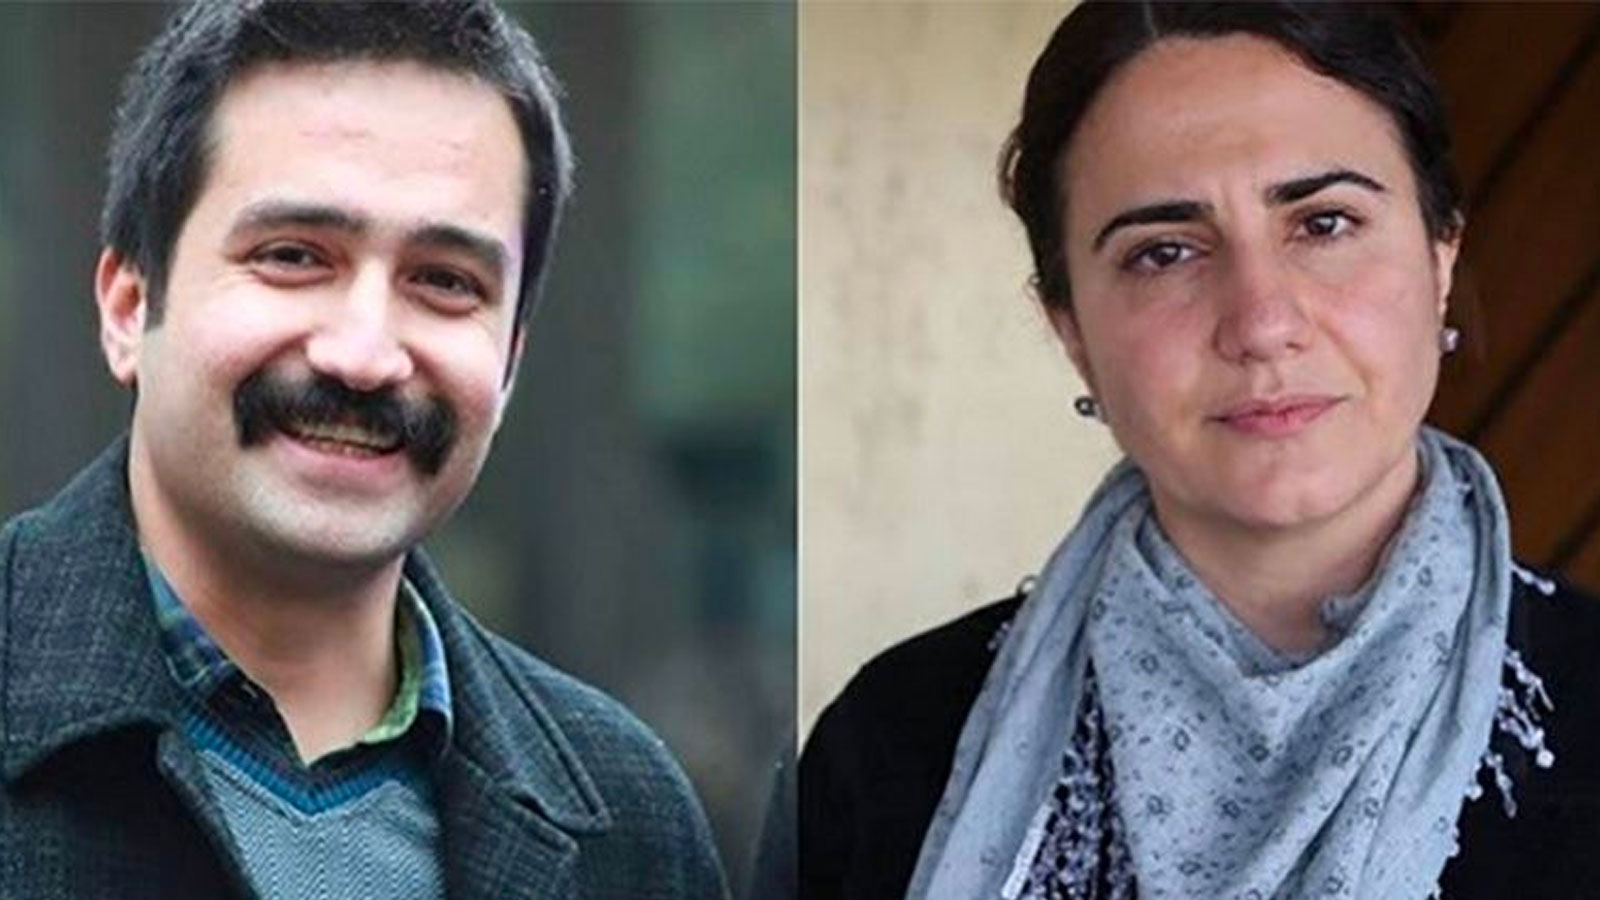 Demokrasi İçin Birlik: Ölüm orucundaki avukatlar Ebru Timtik ve Aytaç Ünsal  için Adalet Bakanı inisiyatif kullanmalı